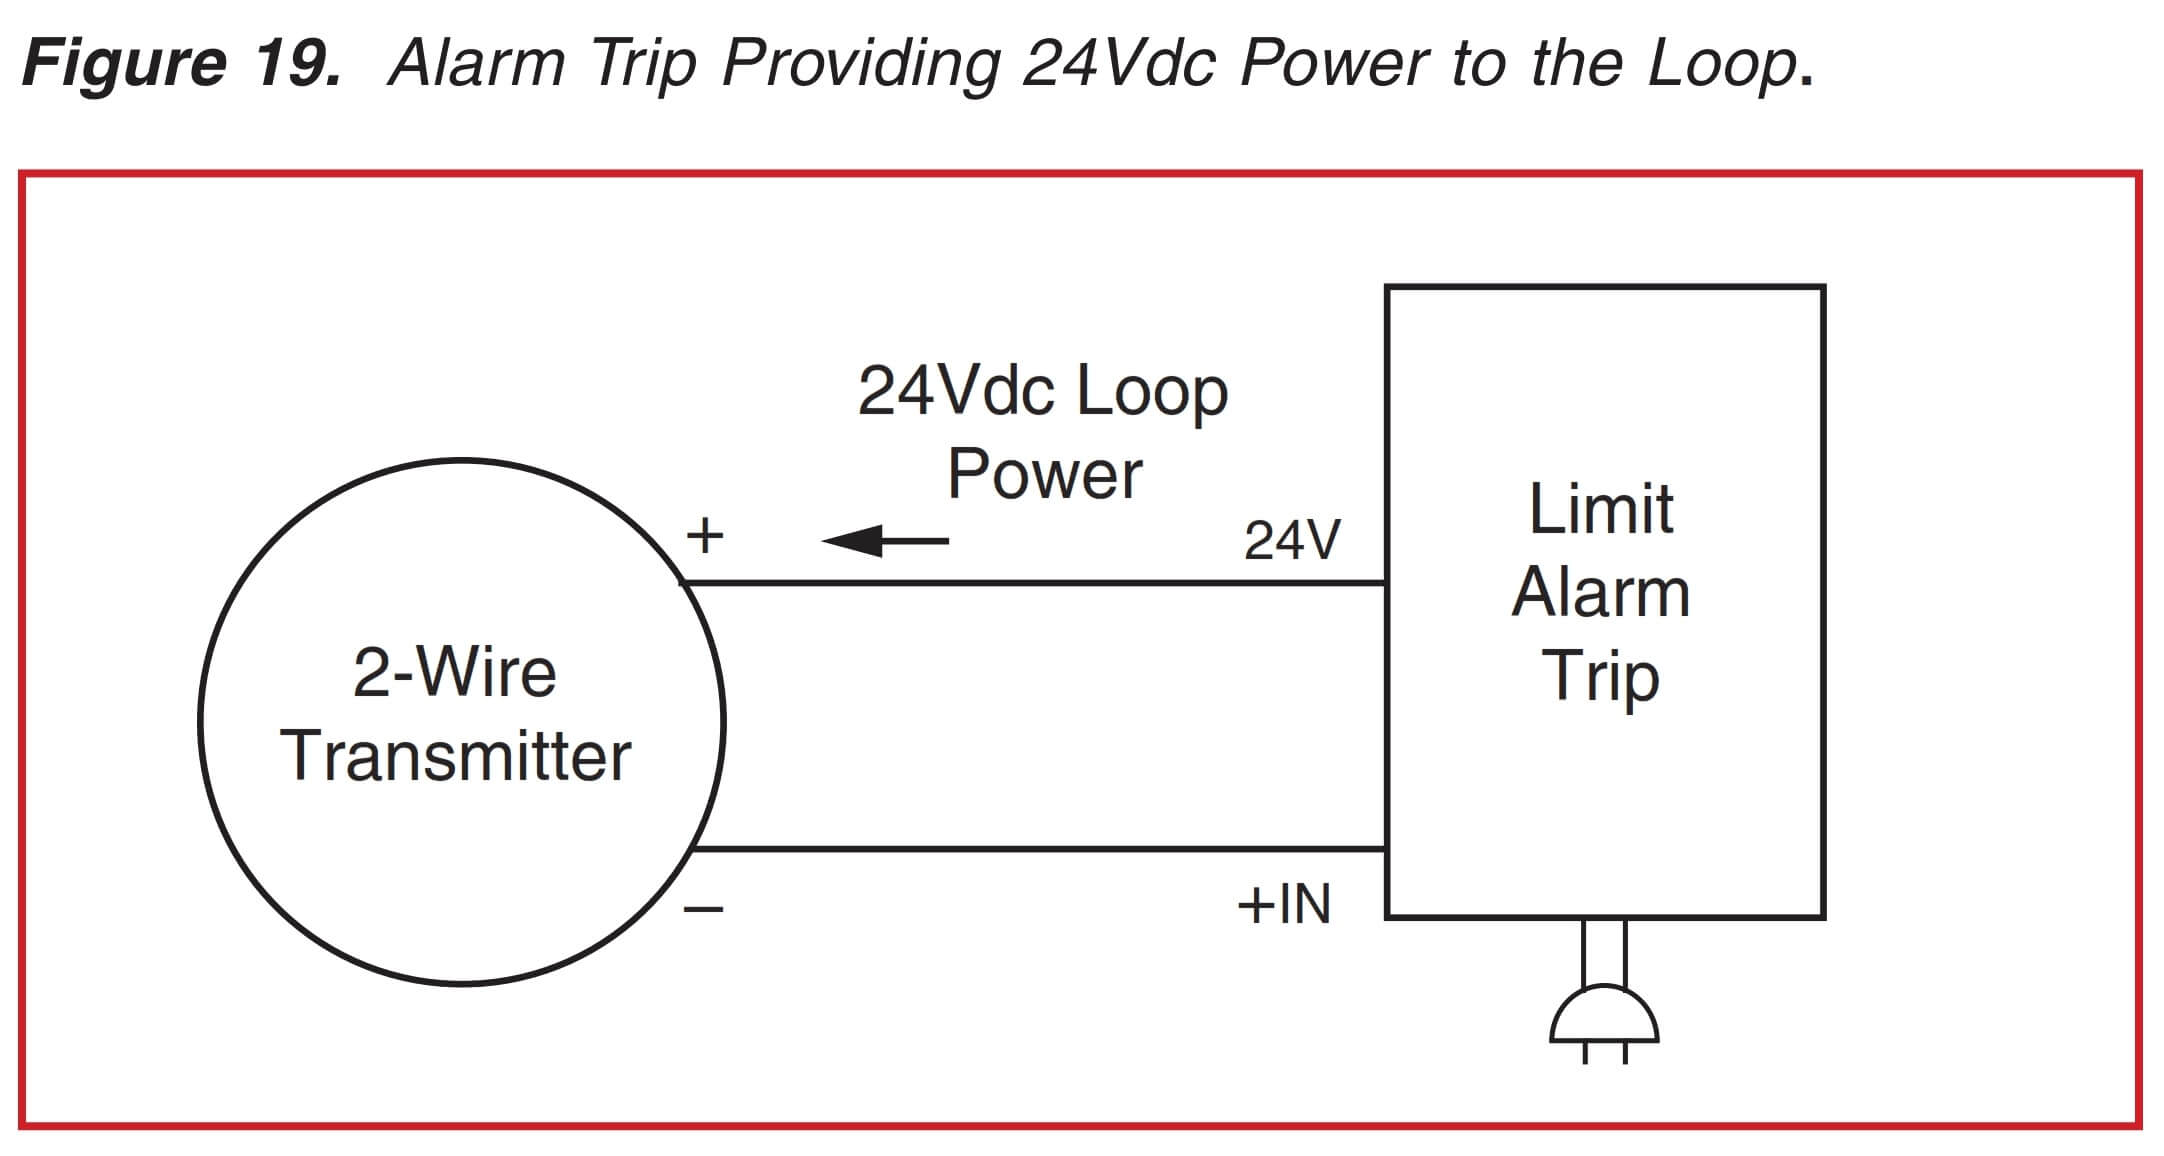 Alarm Trip for 24v DC Loop